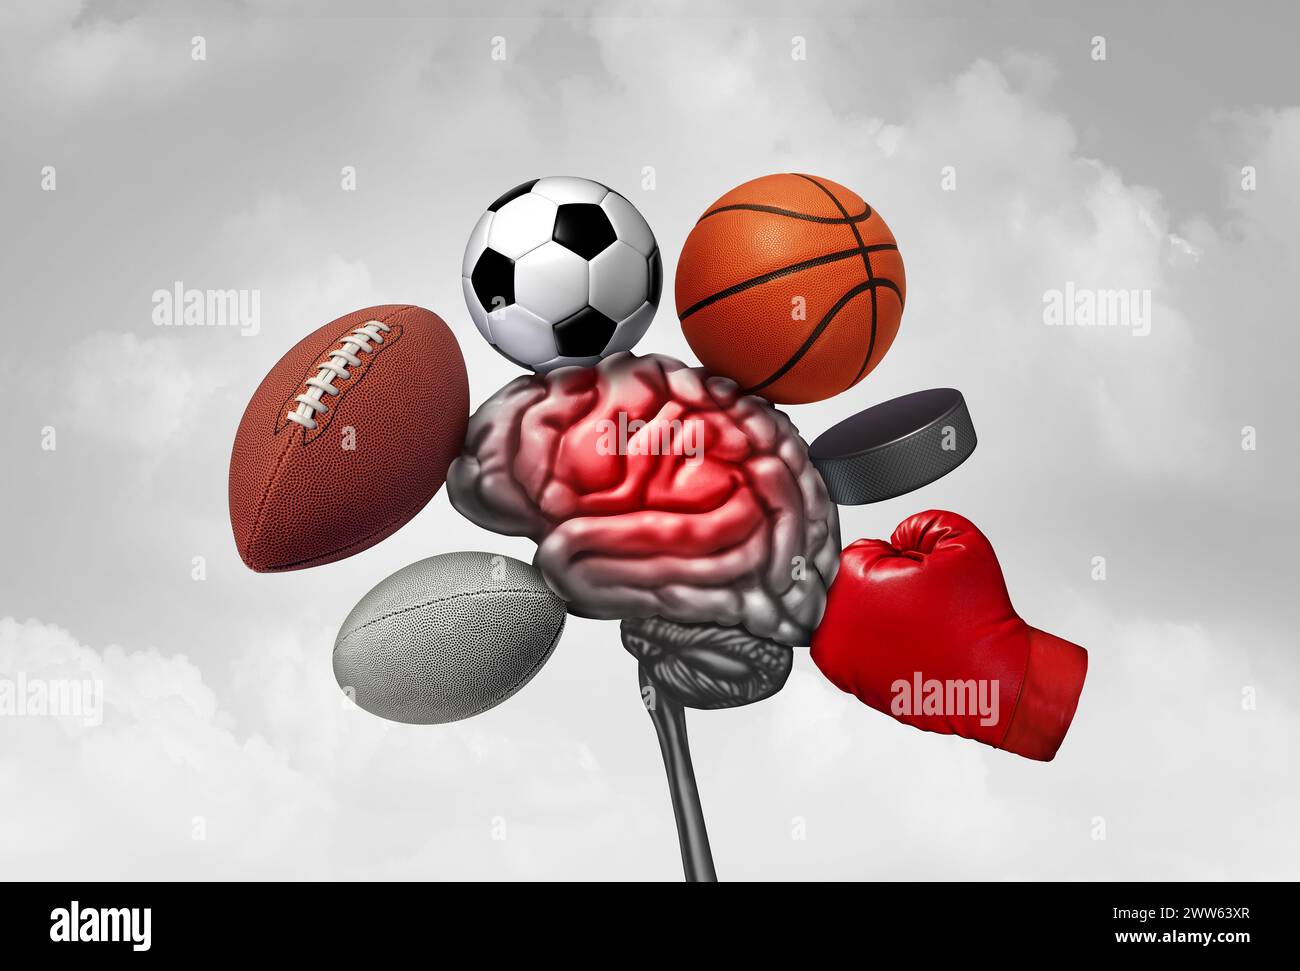 Lesioni cerebrali sportive come lesioni sportive che causano una commozione cerebrale come calcio hockey rugby basket boxe e calcio come attrezzature o atleti che si schiantano Foto Stock